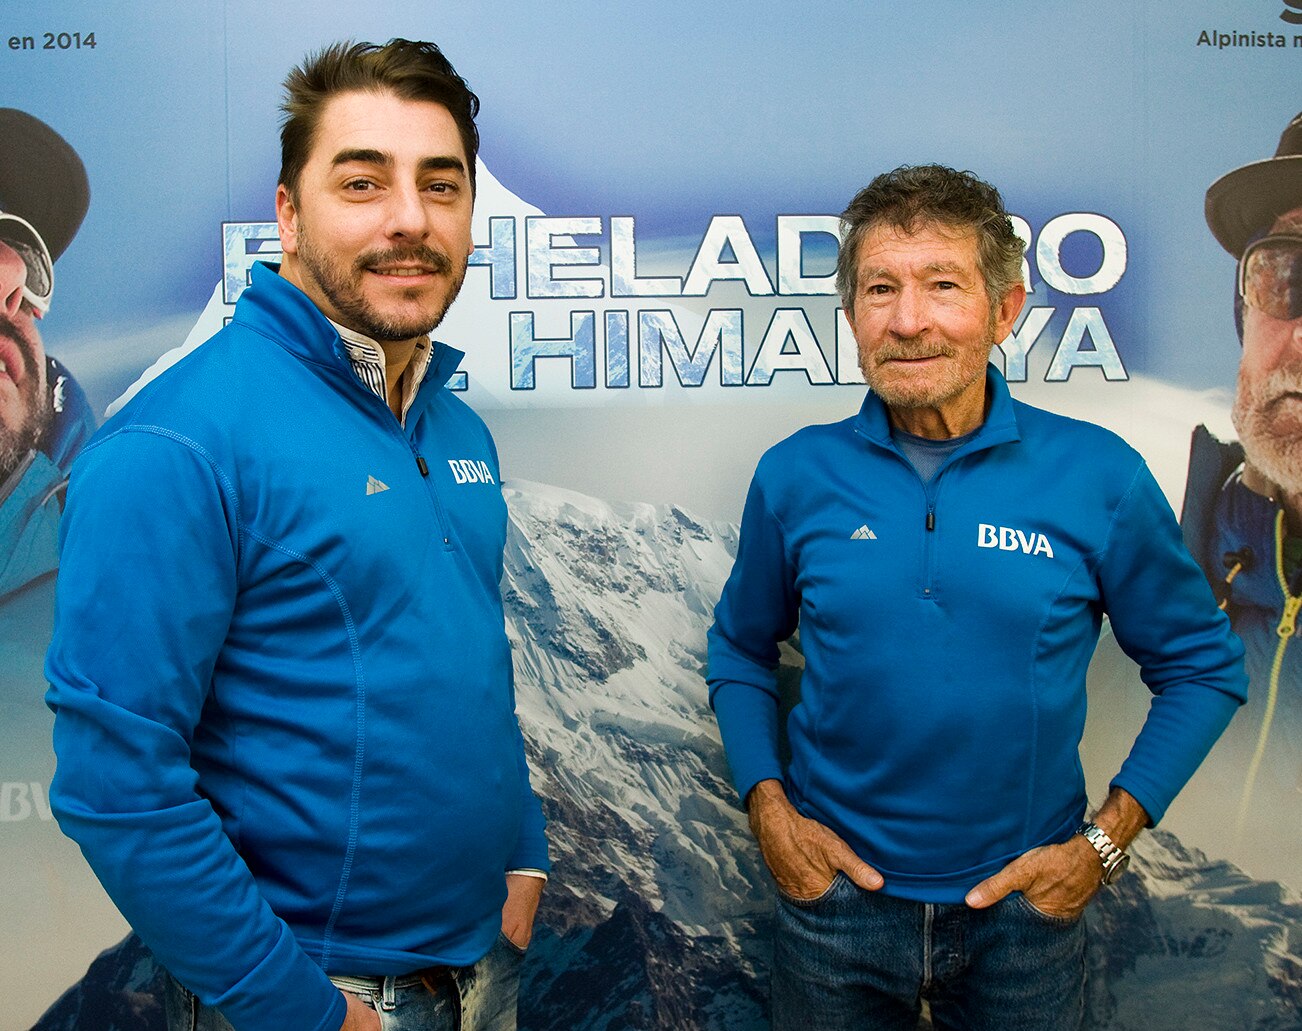 Fotografia de la presentacion del Heladero del Himalaya con Carlos Soria y Jordi Roca BBVA